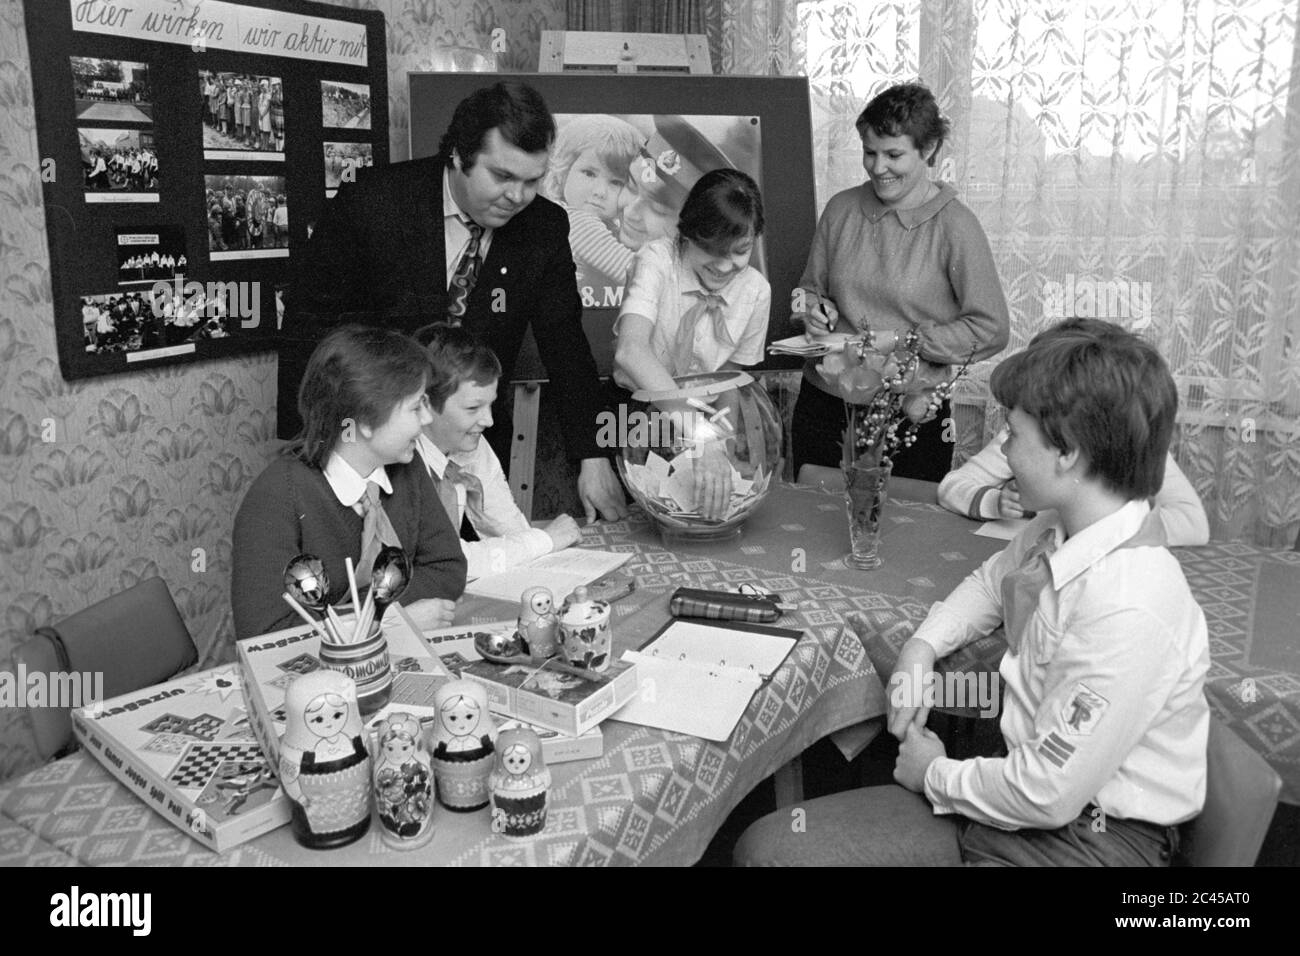 11 juillet 1985, Saxe, Delitzsch: Les prix d'une compétition sont raflés au milieu des années 1980 en présence d'un "officiel" de jeunes pionniers et de pionniers Thälmann portant des mouchoirs pionniers à la station de jeunes techniciens et touristes. Au premier plan, il y a des matryoshkas sur la table, au fond il y a une affiche du jour de la libération (8 mai) avec un soldat soviétique avec un enfant dans ses bras. Date exacte de la photo inconnue. Photo: Volkmar Heinz/dpa-Zentralbild/ZB Banque D'Images